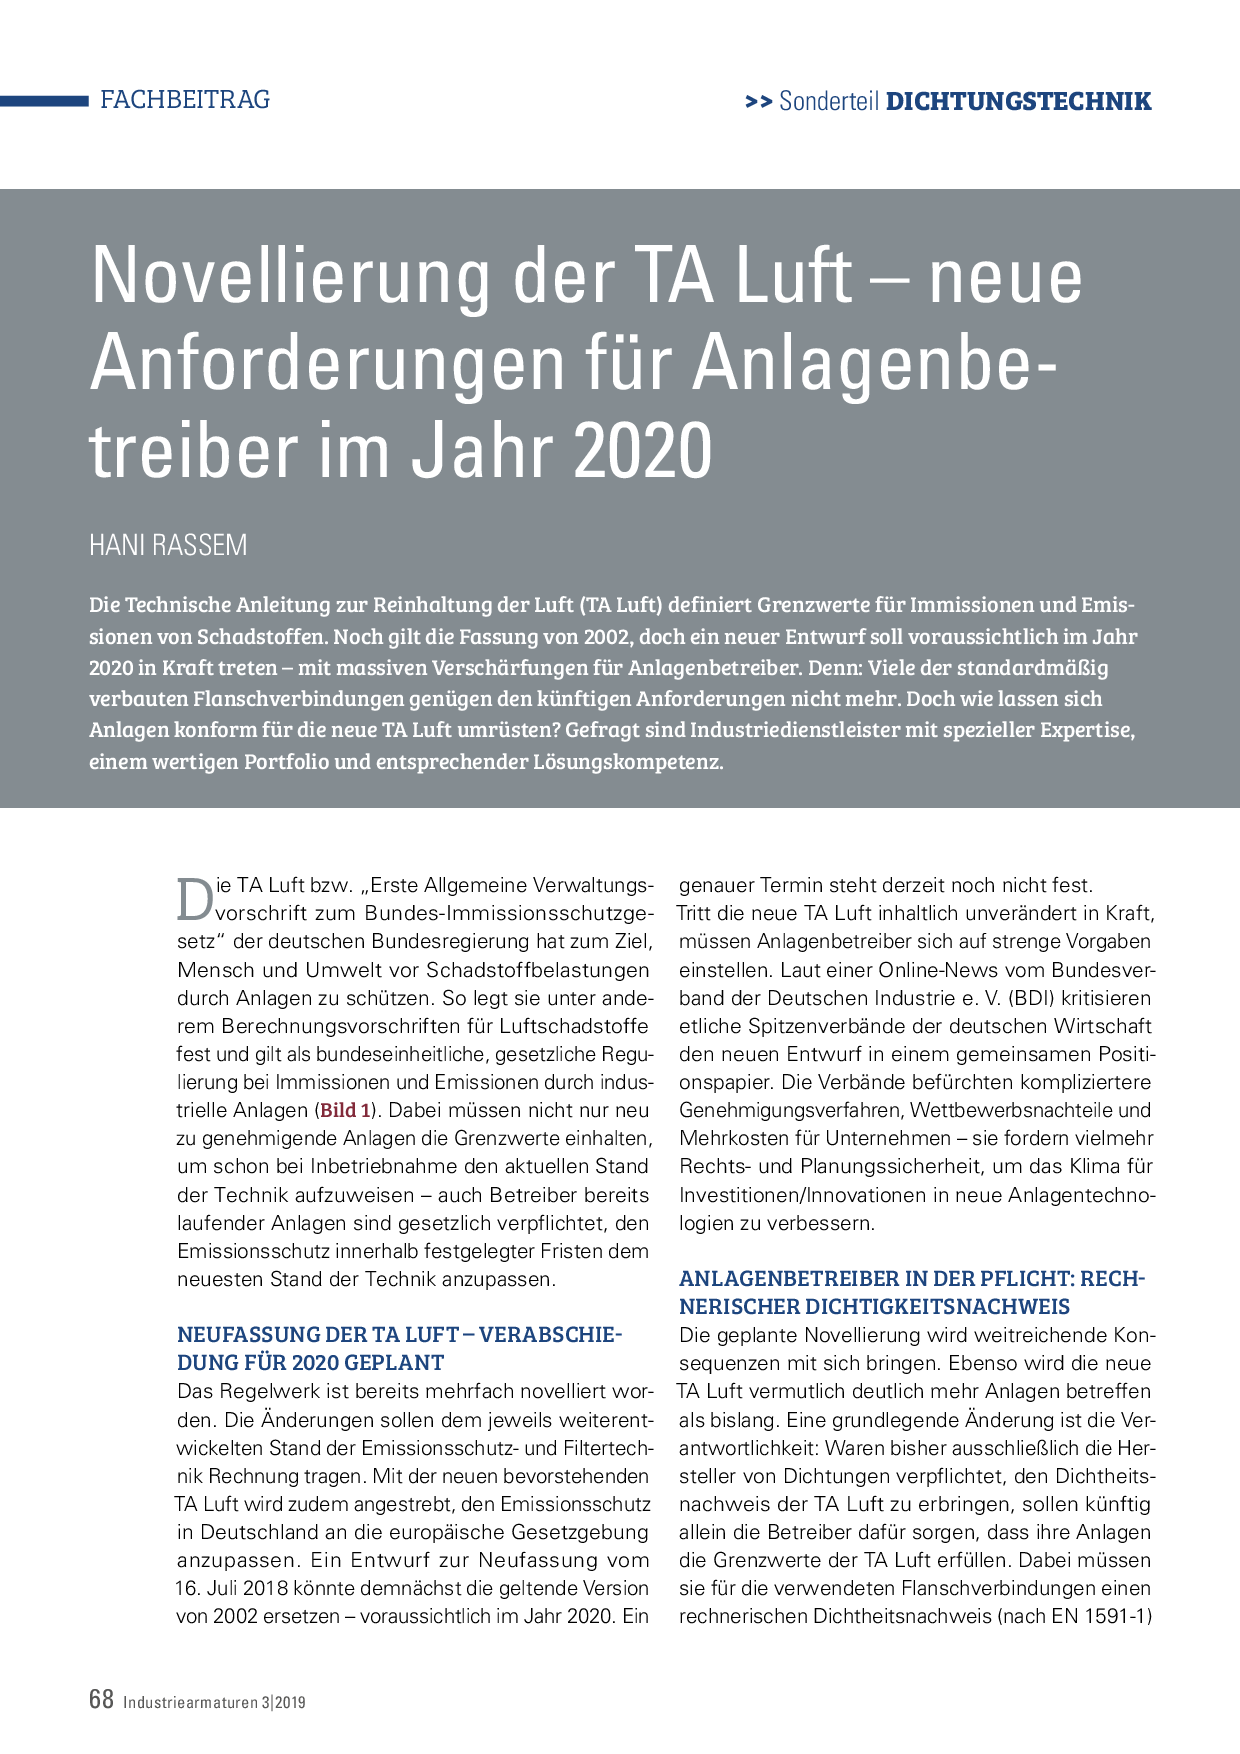 Novellierung der TA Luft – neue Anforderungen für Anlagenbetreiber im Jahr 2020